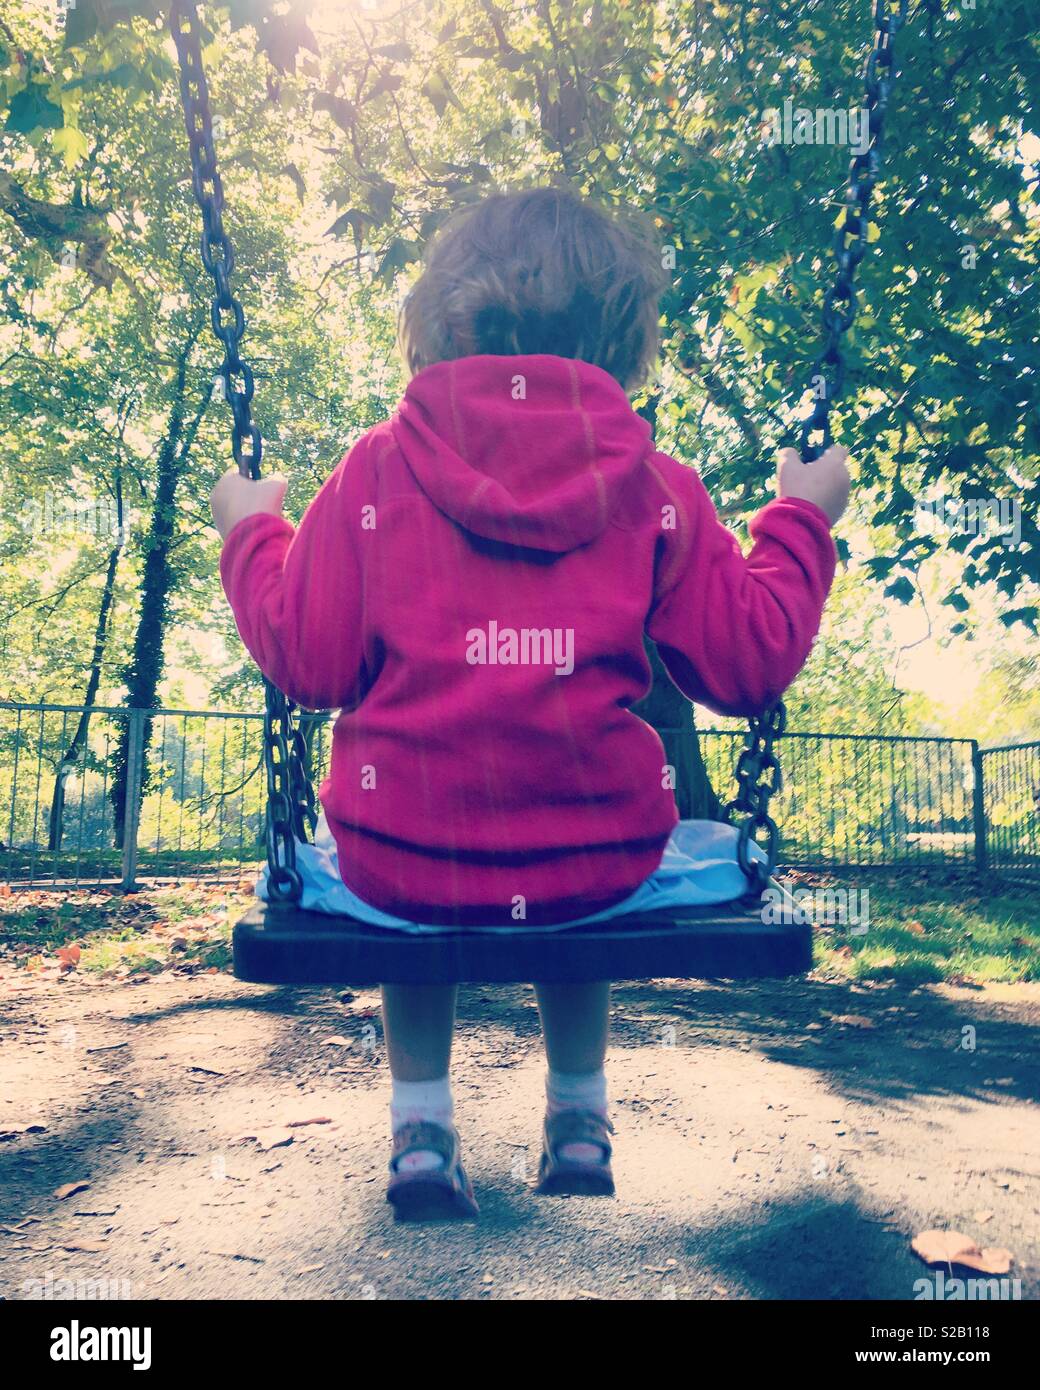 Retrò Instagram foto di una bambina 4 anni / di età compresa tra i quattro anni di oscillazione sull'altalena in altalena parco con alberi e foglie. Regno Unito Foto Stock